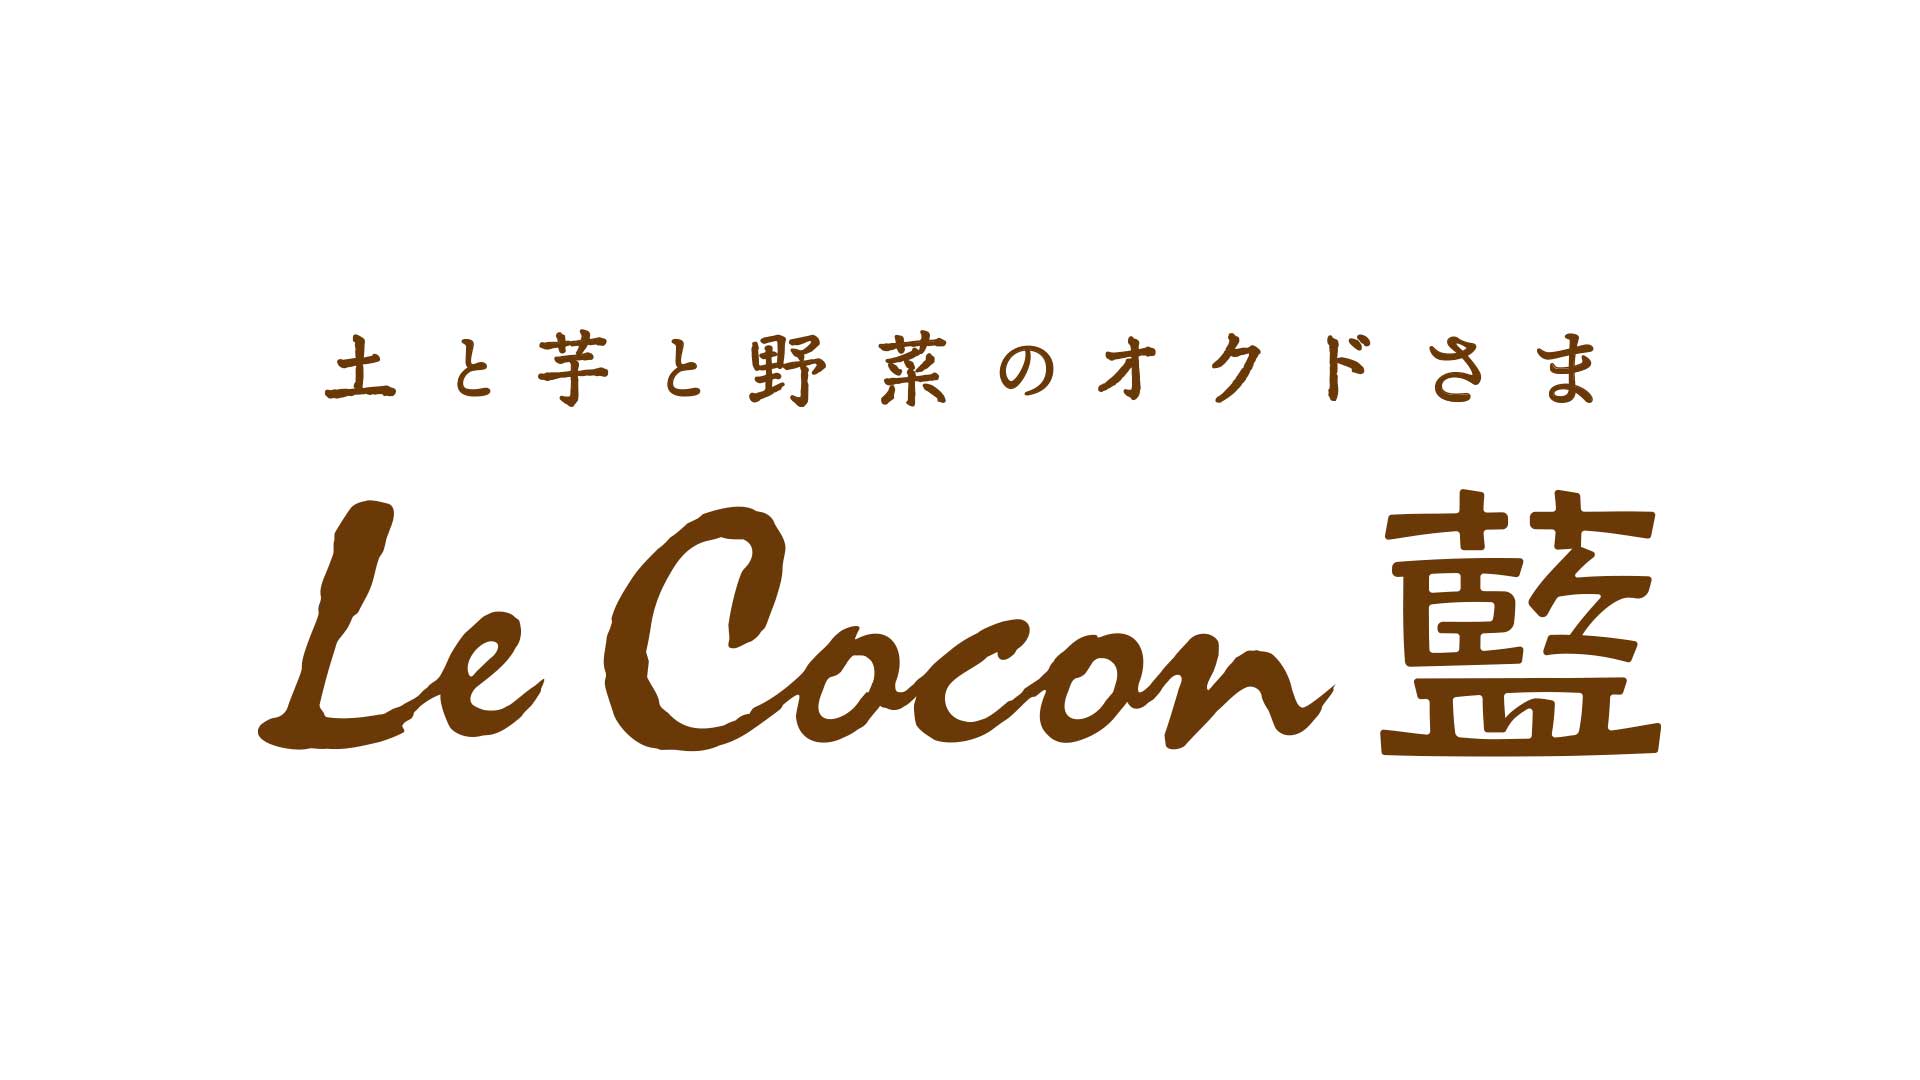 Le Cocon 藍のロゴマーク